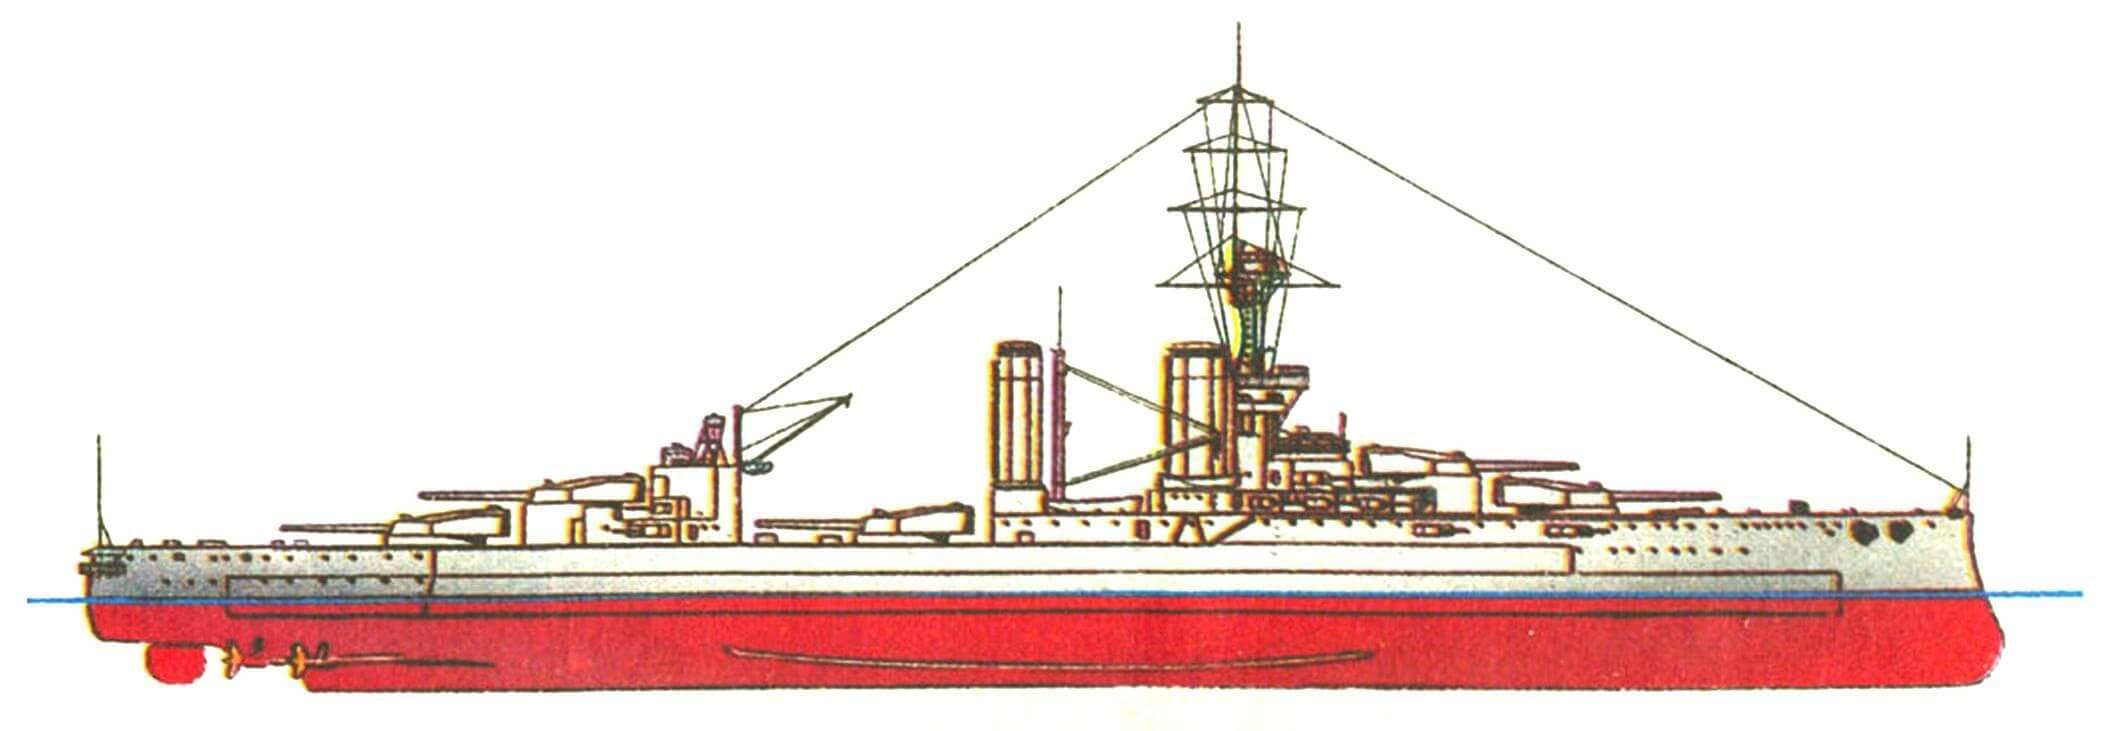 172. Линейный корабль «КИНГ ДЖОРДЖ V», Англия, 1912 г. Заложен и спущен на воду в 1911 г. Водоизмещение нормальное 23 000 т, полное 25 700 т. Длина наибольшая 182,1 м, ширина 27,1 м, осадка 8,7 м. Мощность 4-вальной турбинной установки 31 000 л. с., скорость 21 уз. Броня и вооружение — как на «Орионе». Всего построено 4 единицы: «Кинг Джордж V», «Центурион», «Аякс» и «Одейшес» (последние три — 1913 г.).